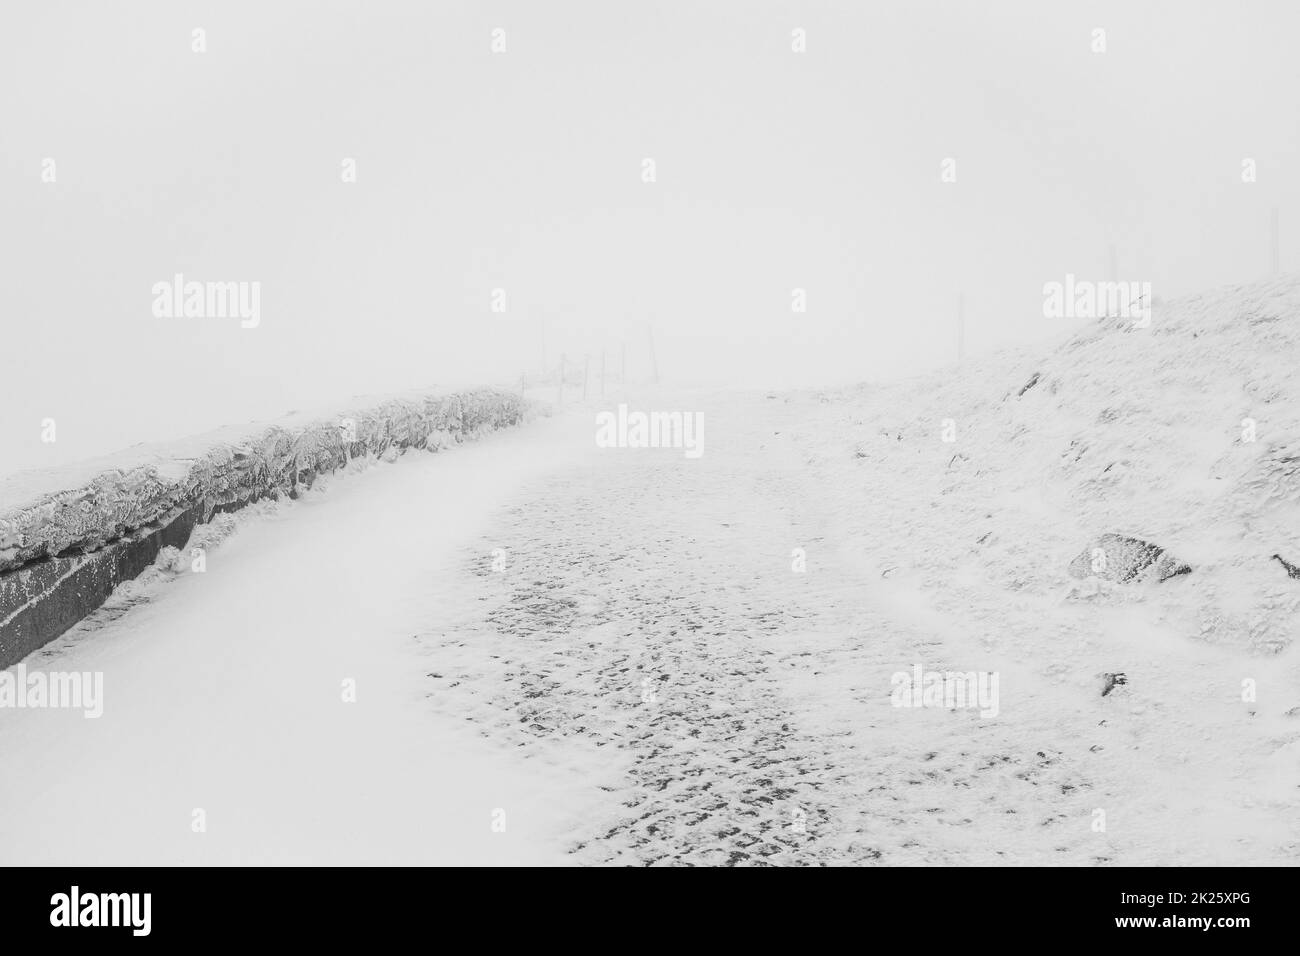 Strada invernale in salita in cattive condizioni meteorologiche. Paesaggio invernale. Foto Stock